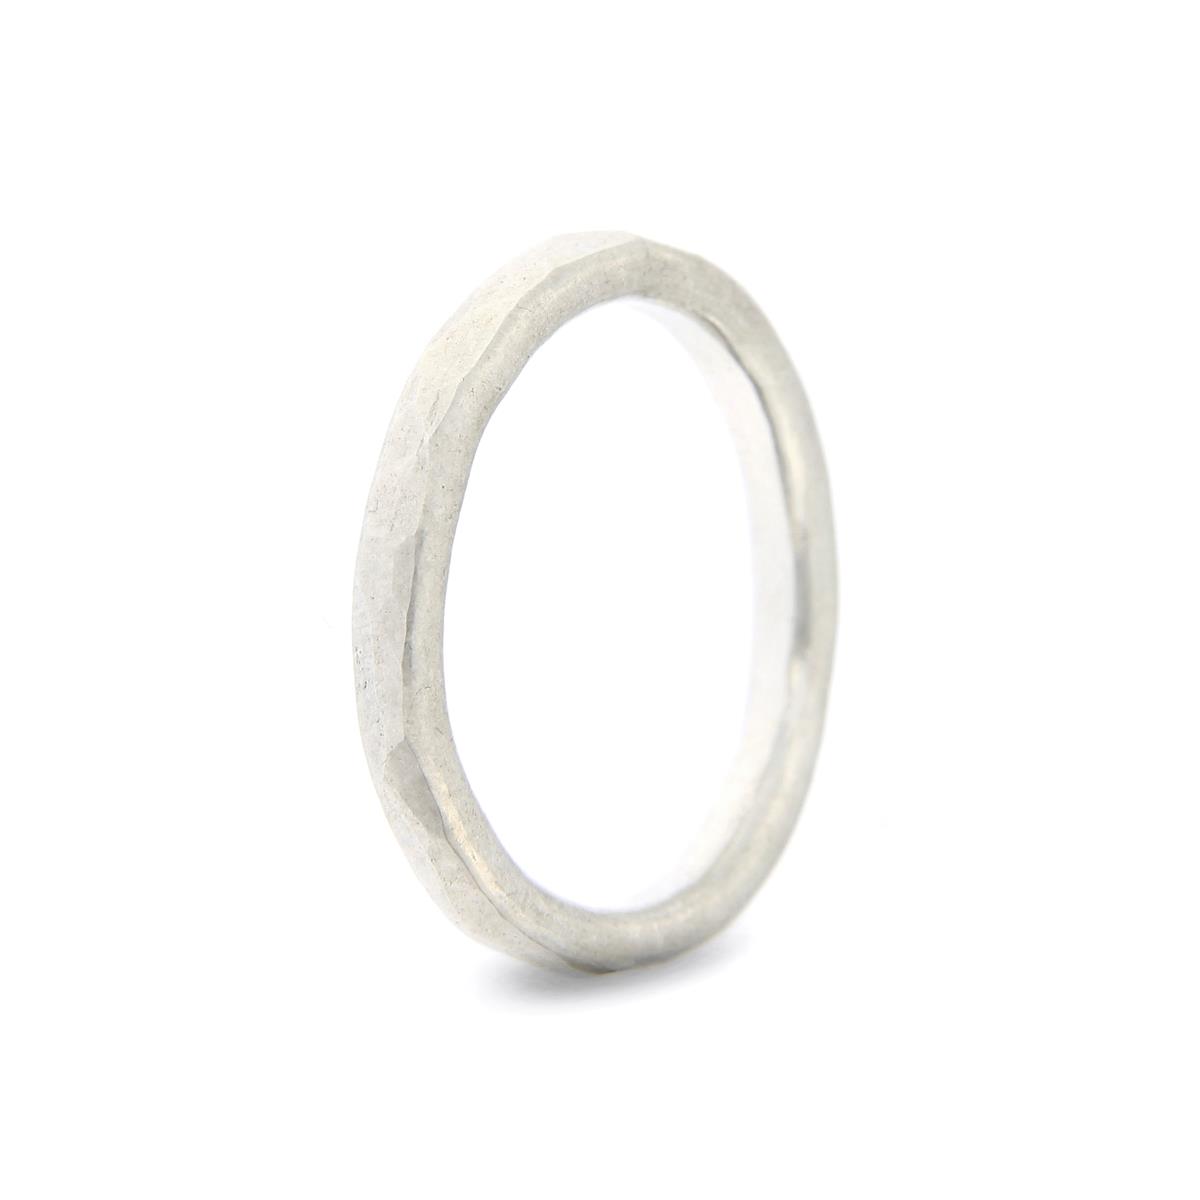 Katie g. Jewellery - Hammered Ring 2,5mm - sterling silber - Ring um 100€ und pro Brillant 120€ - mehrere Brillanten auch möglich